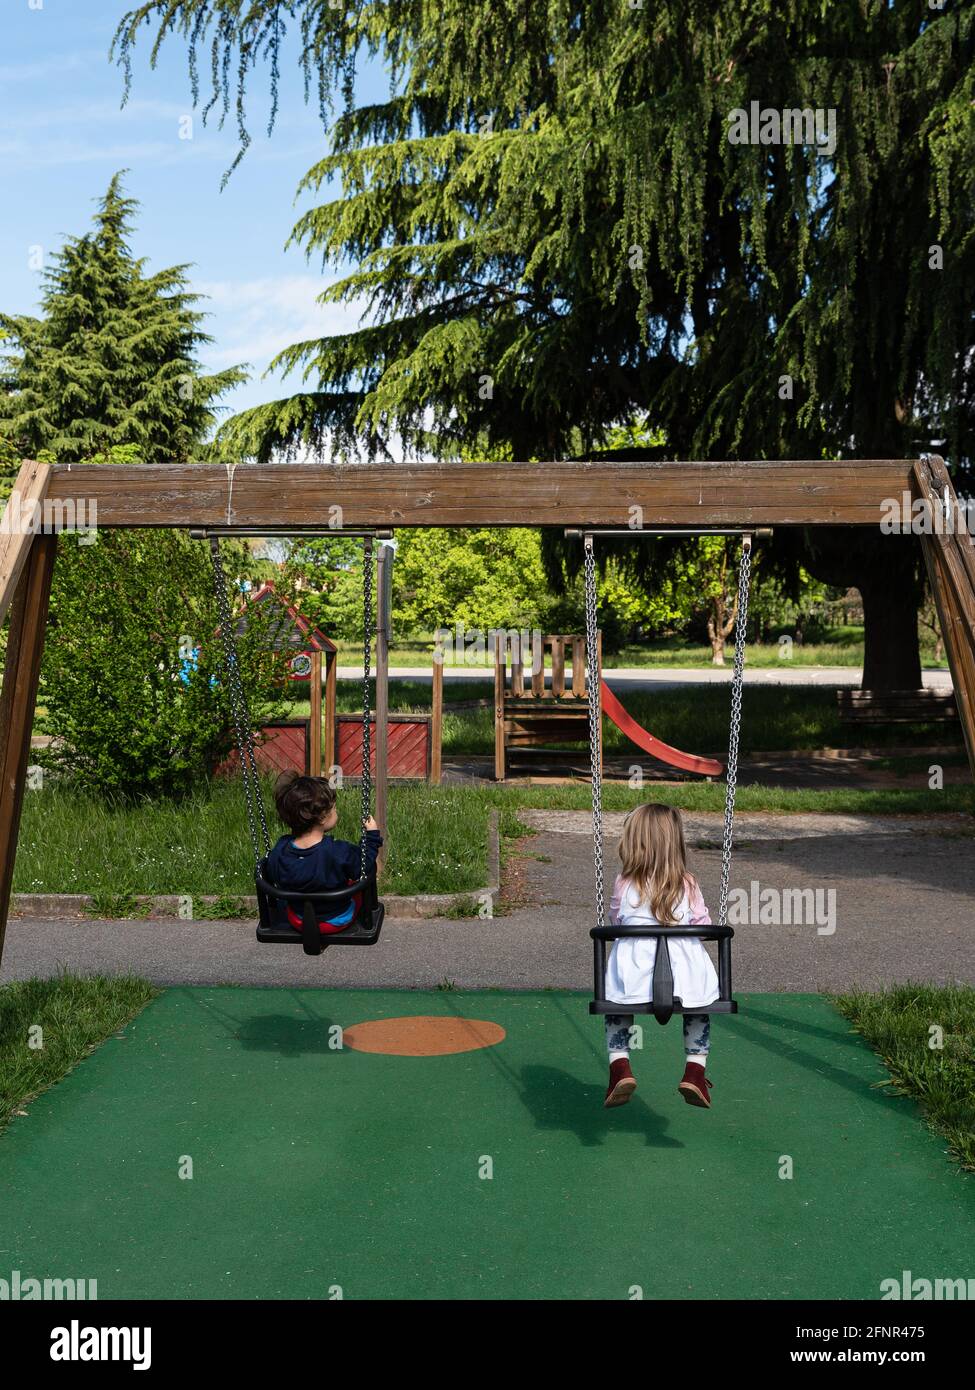 Dos niños juegan en un columpio en un parque público, fotografía callejera  con sujetos irreconocibles fotografiados desde atrás Fotografía de stock -  Alamy